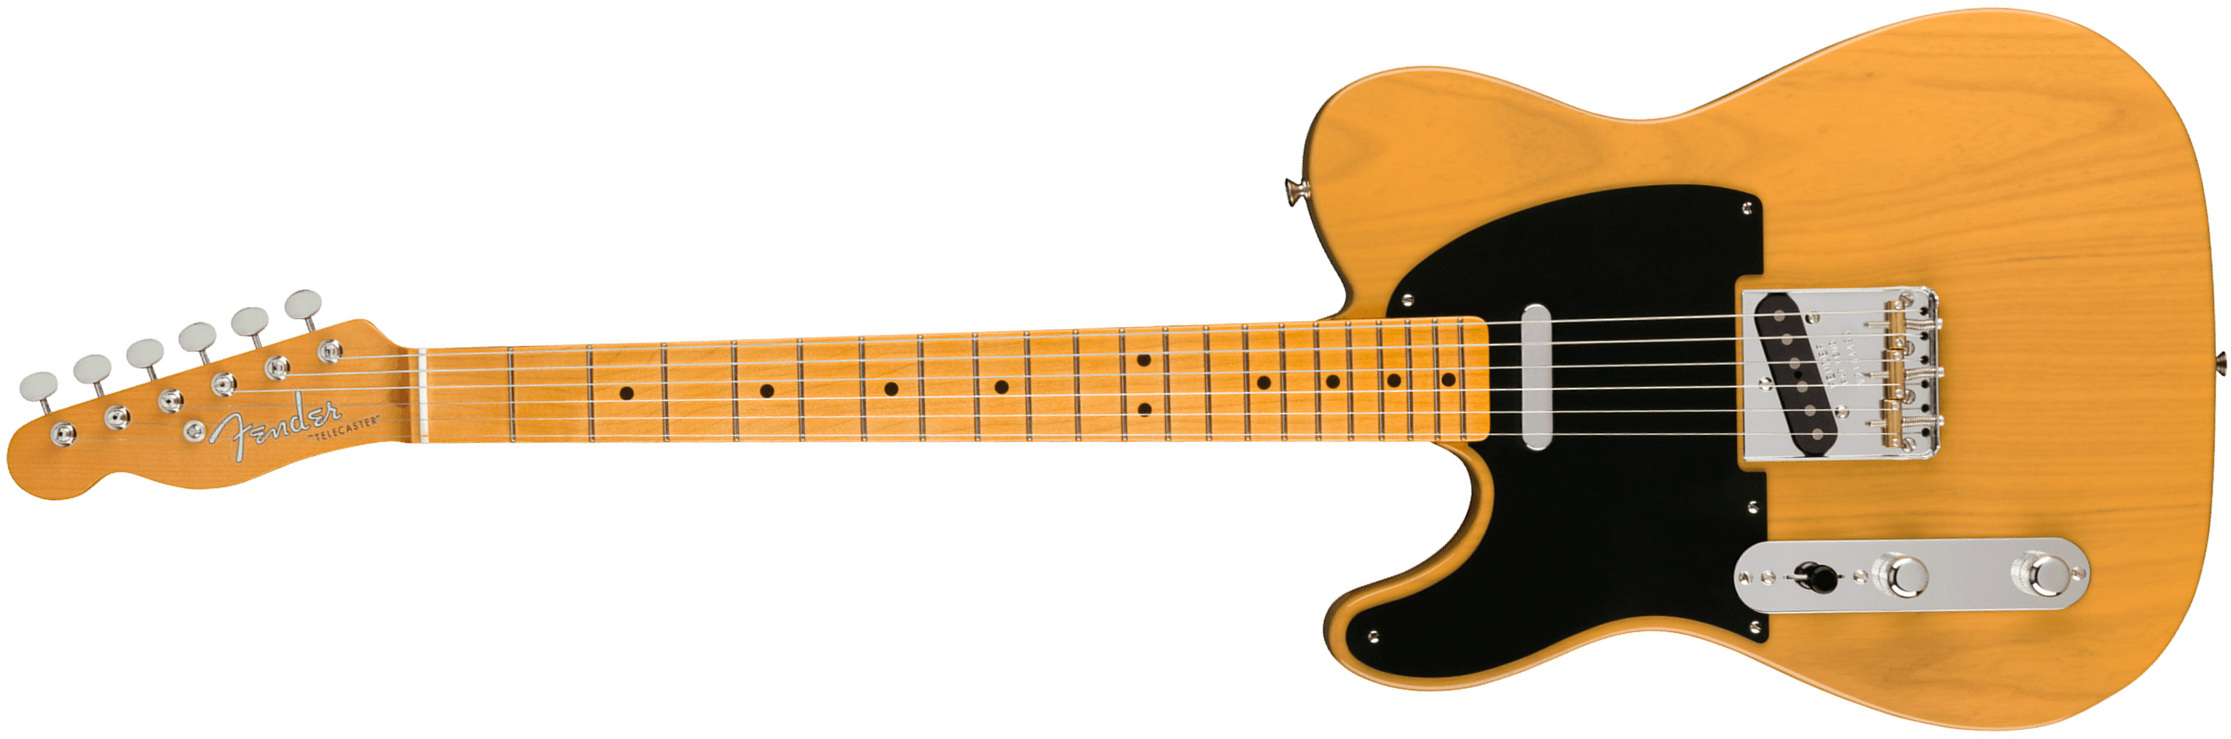 Fender Tele 1951 American Vintage Ii Lh Gaucher 2s Ht Mn - Butterscotch Blonde - Linkshandige elektrische gitaar - Main picture